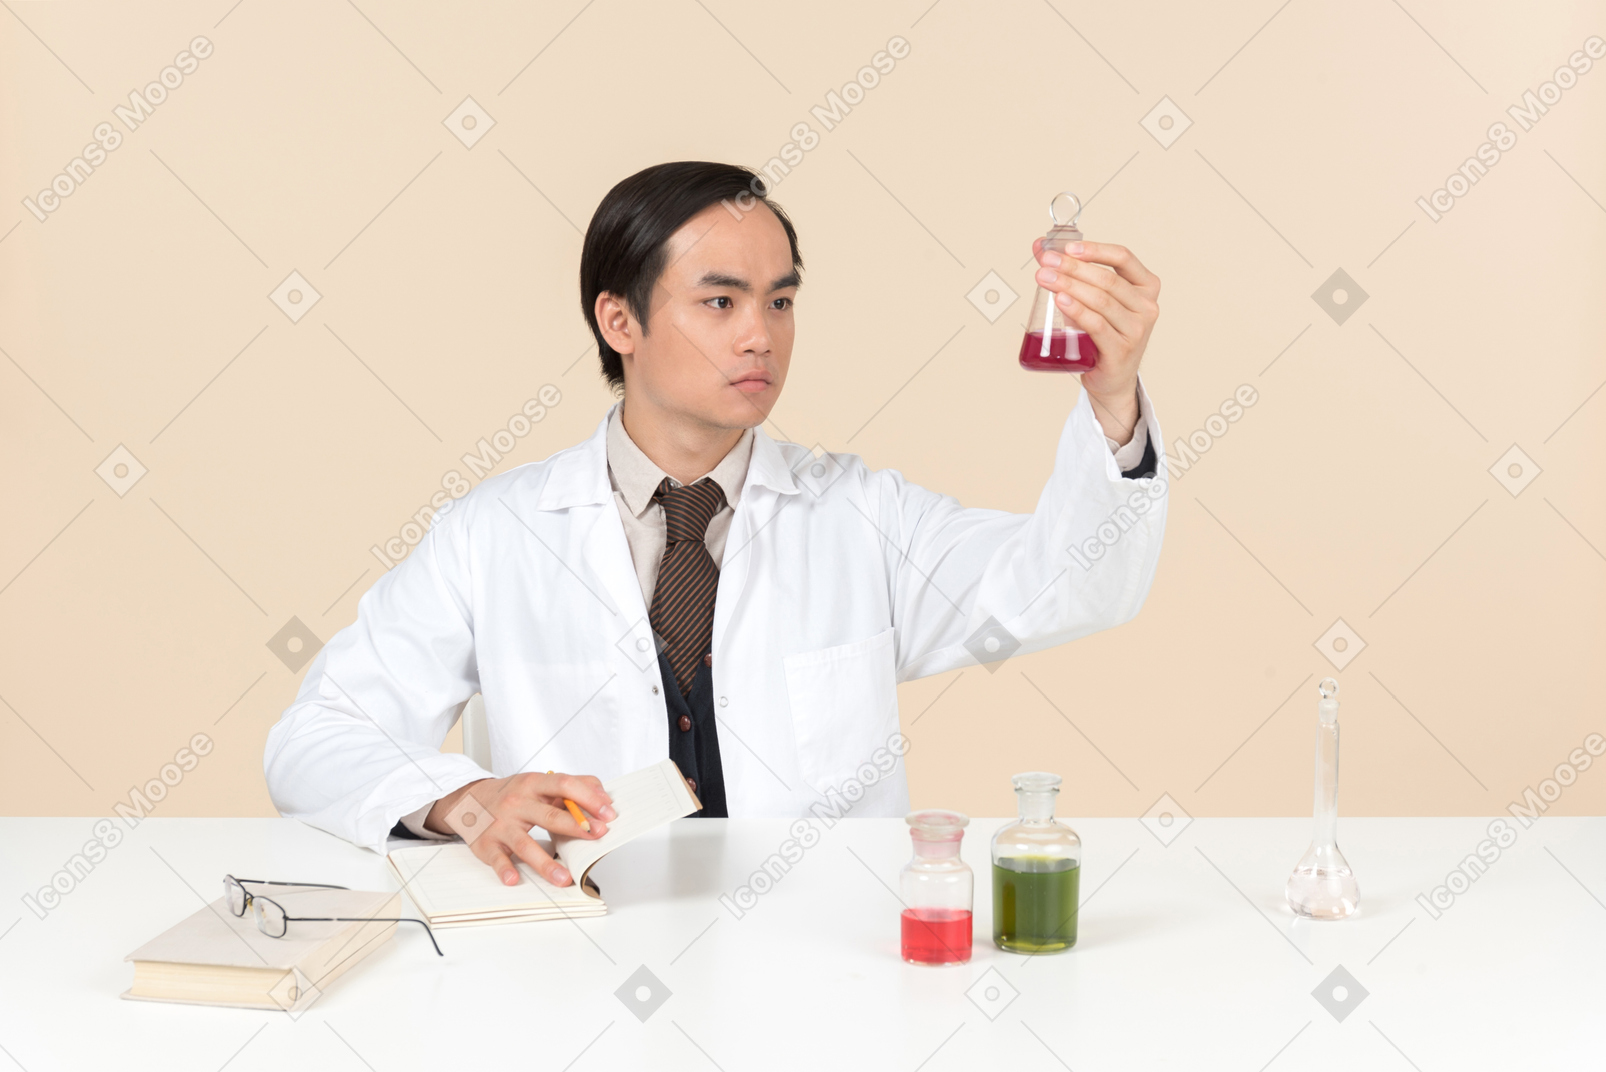 Un científico asiático en una bata blanca trabajando en un experimento químico